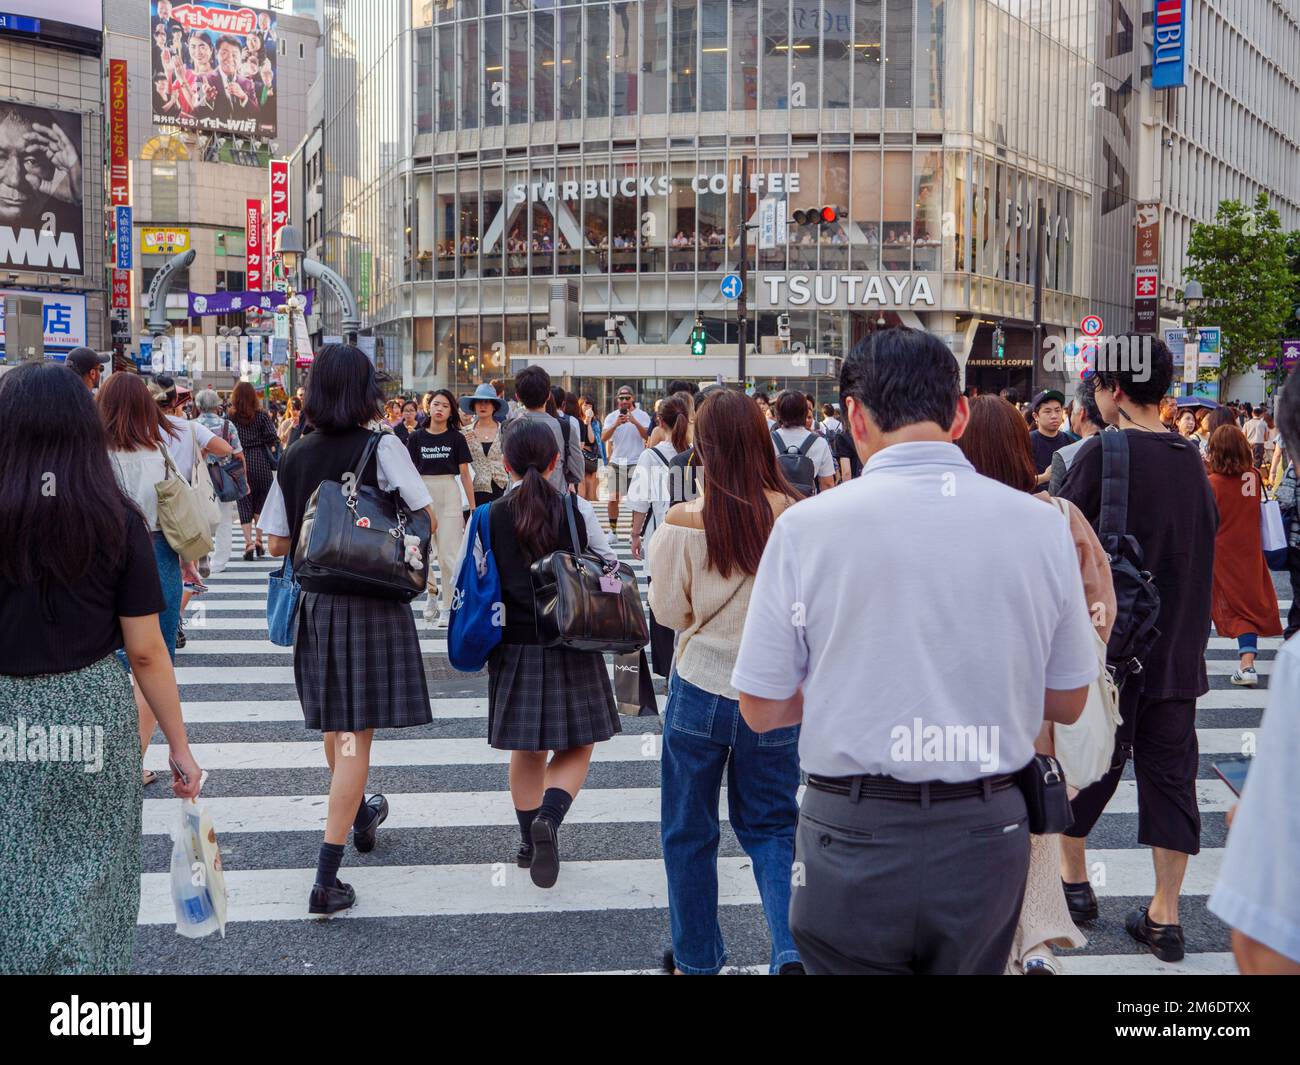 Shibuya, Japan - 23 9 19: Ein Geschäftsleute In der Menge, die das Shibuya-Gerangel überquert Stockfoto